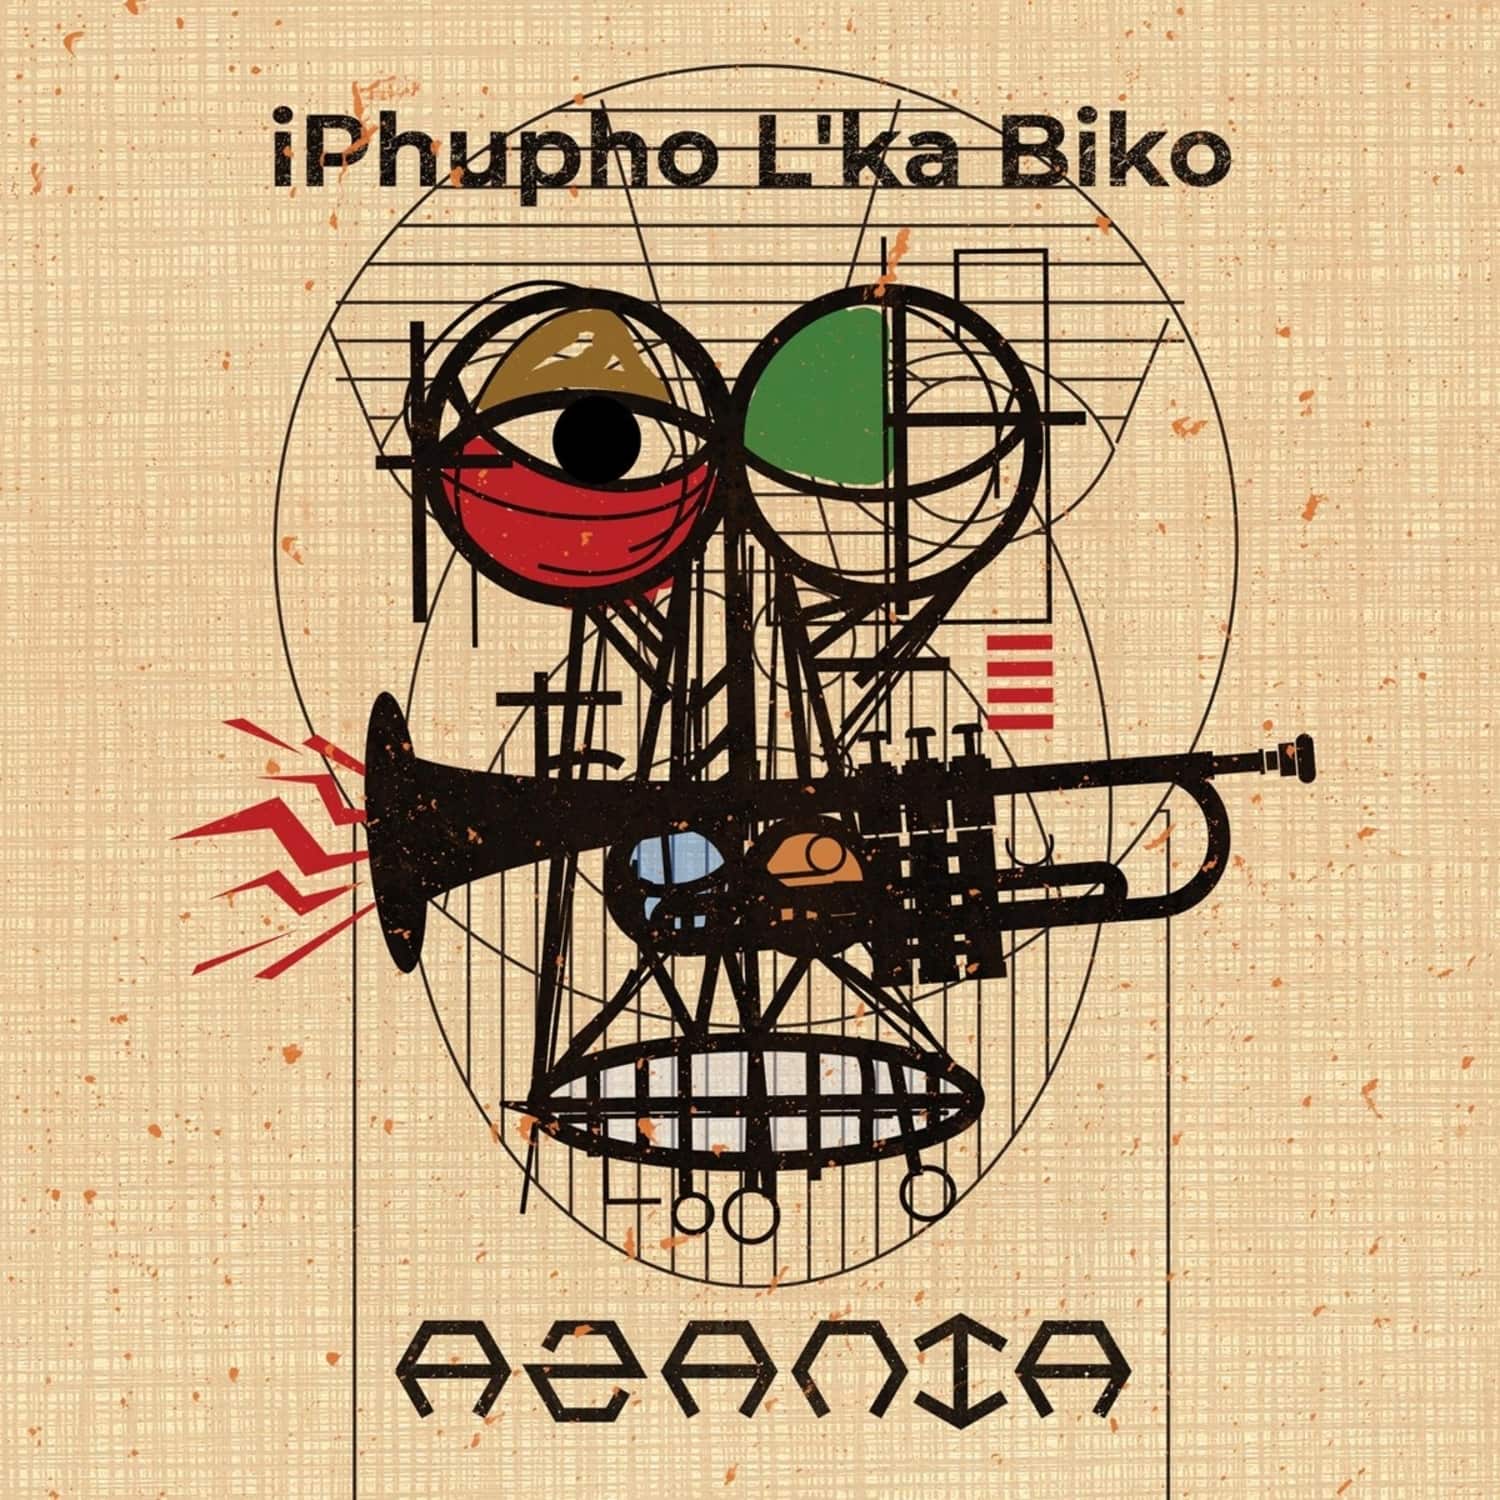 Iphupho L ka Biko - AZANIA 